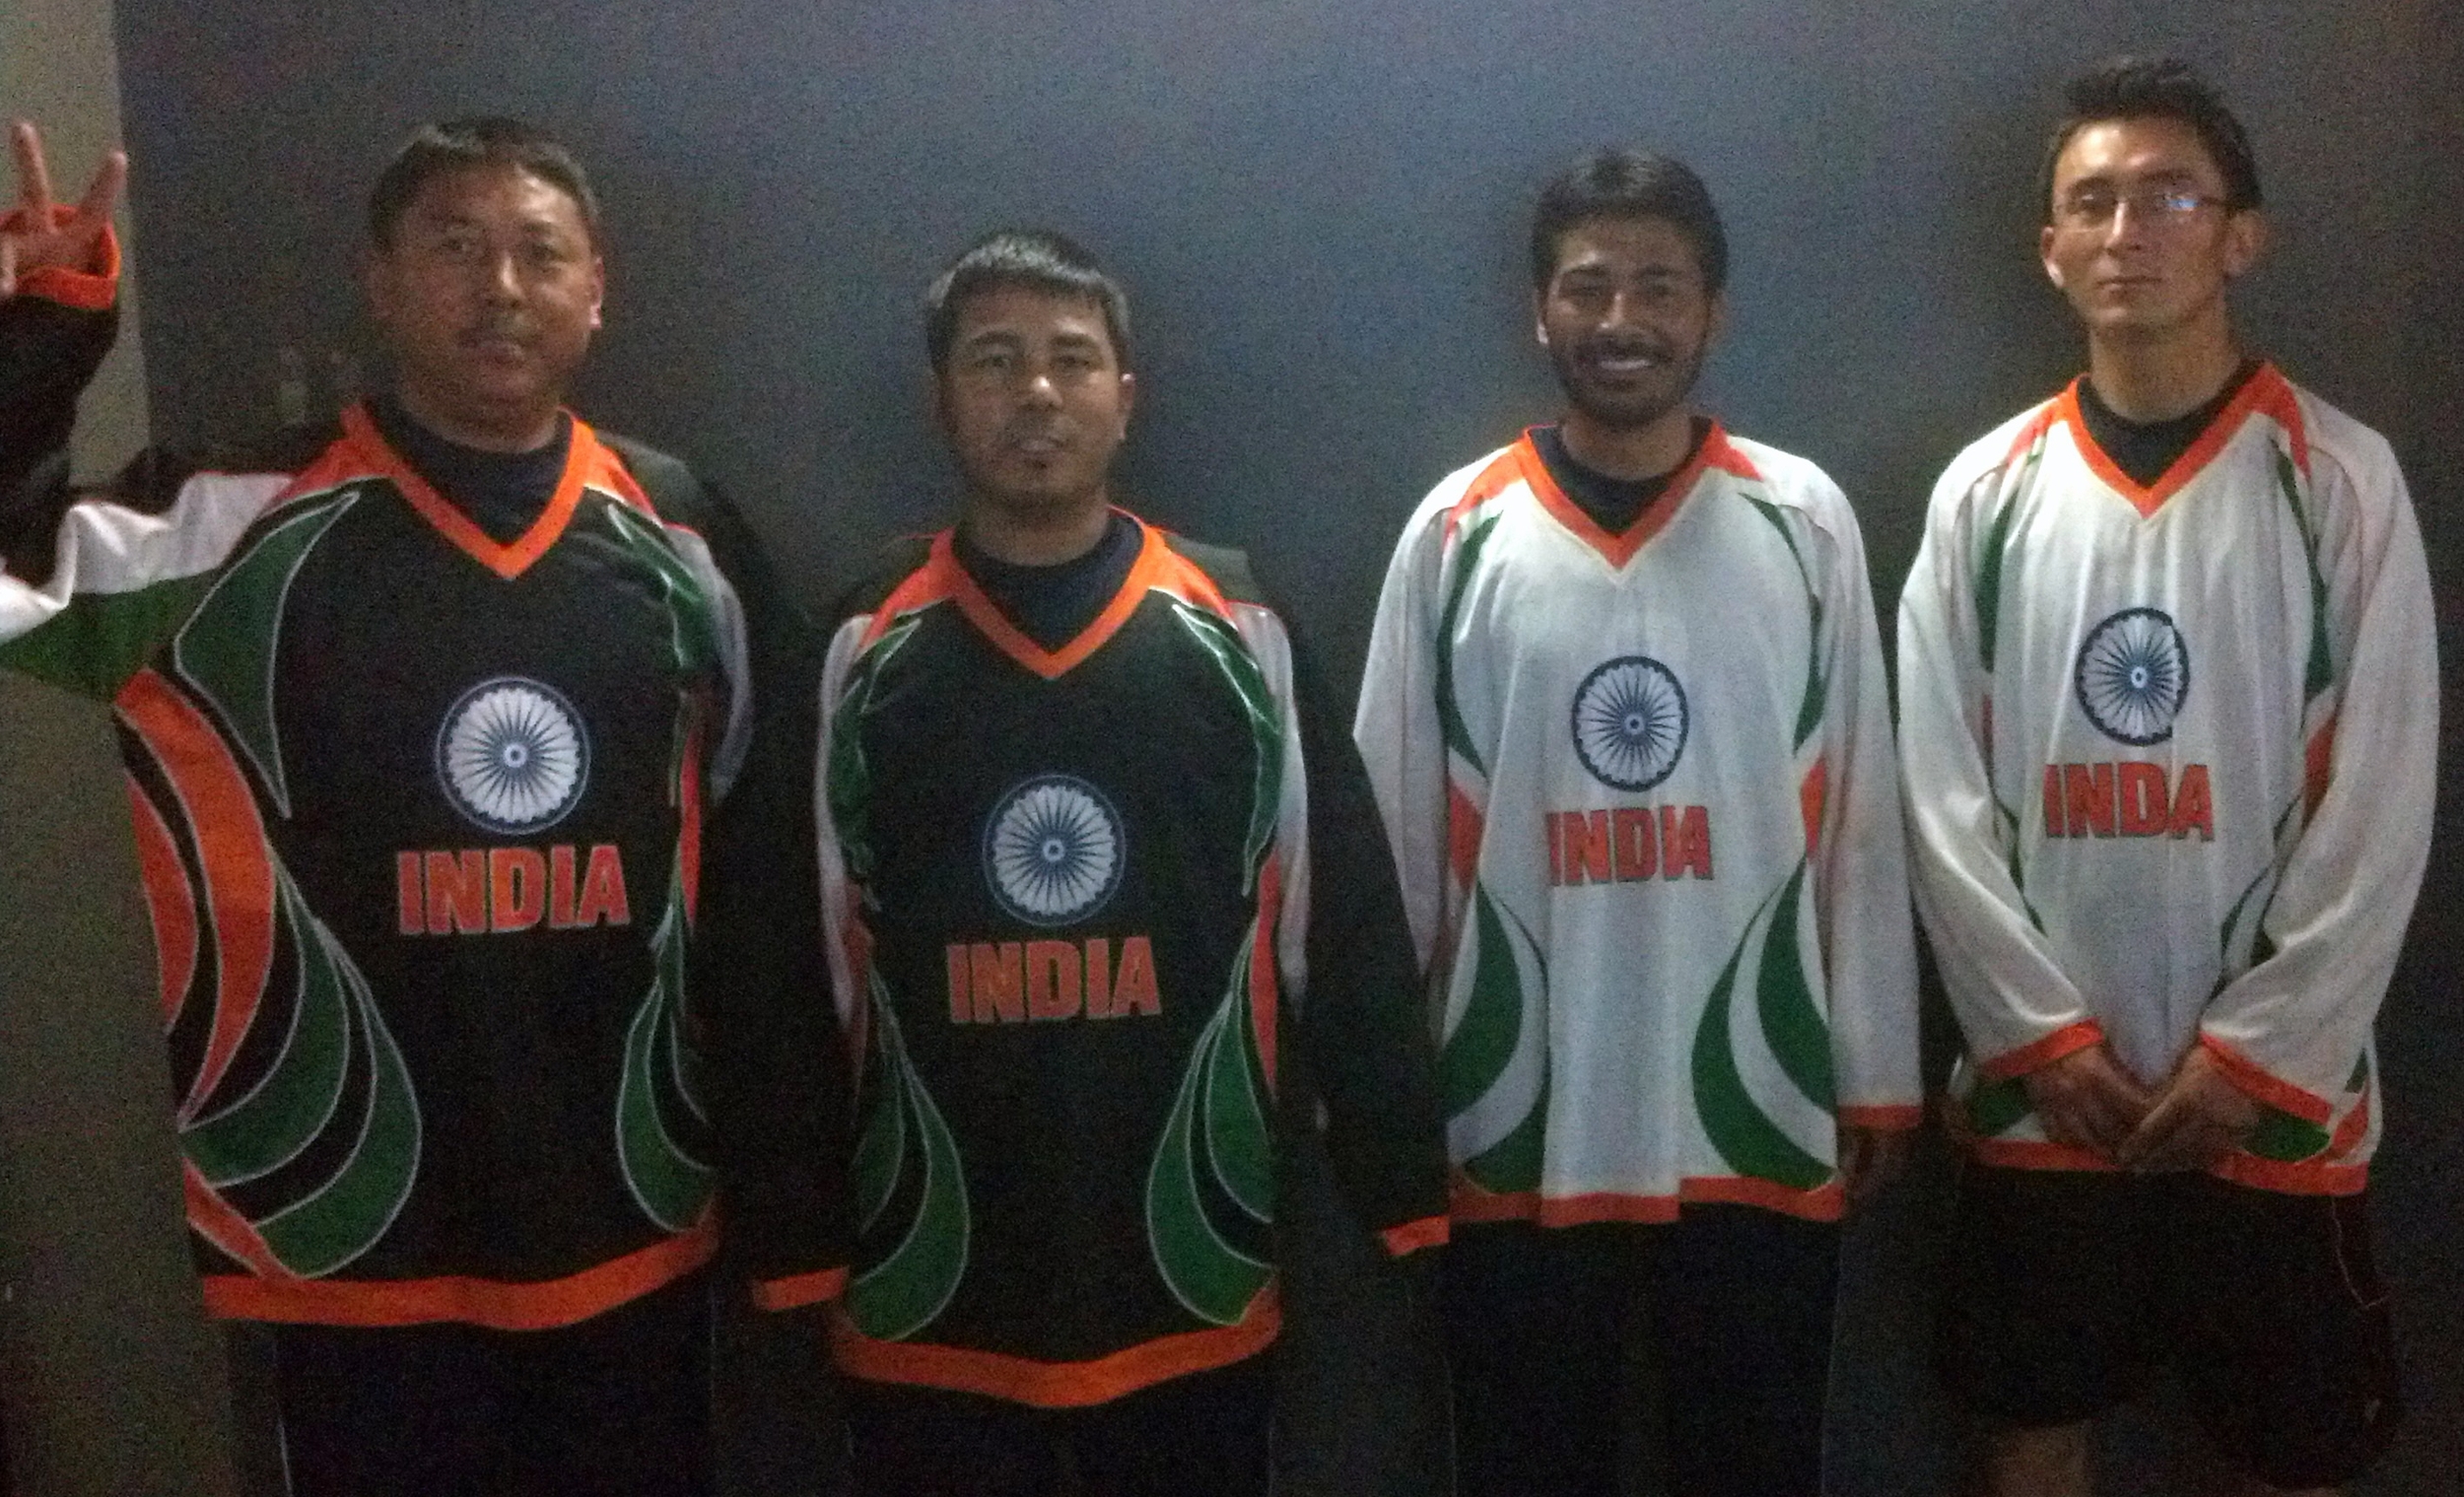 nhl jerseys india